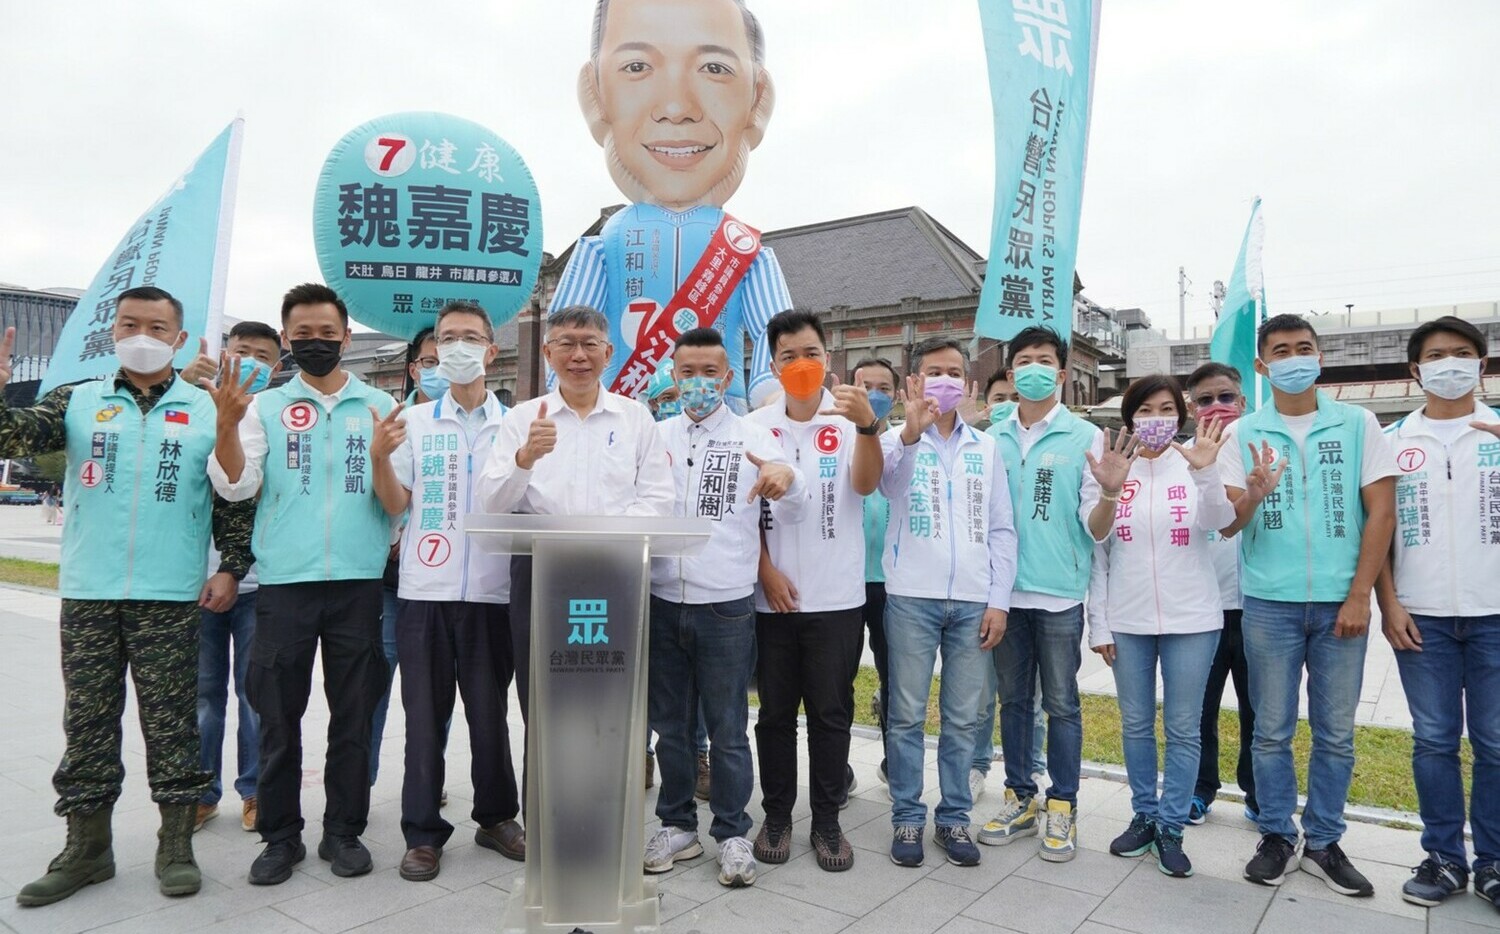 柯文哲台中催票 呼籲1126「投給台灣未來的希望」 | 政治 | New